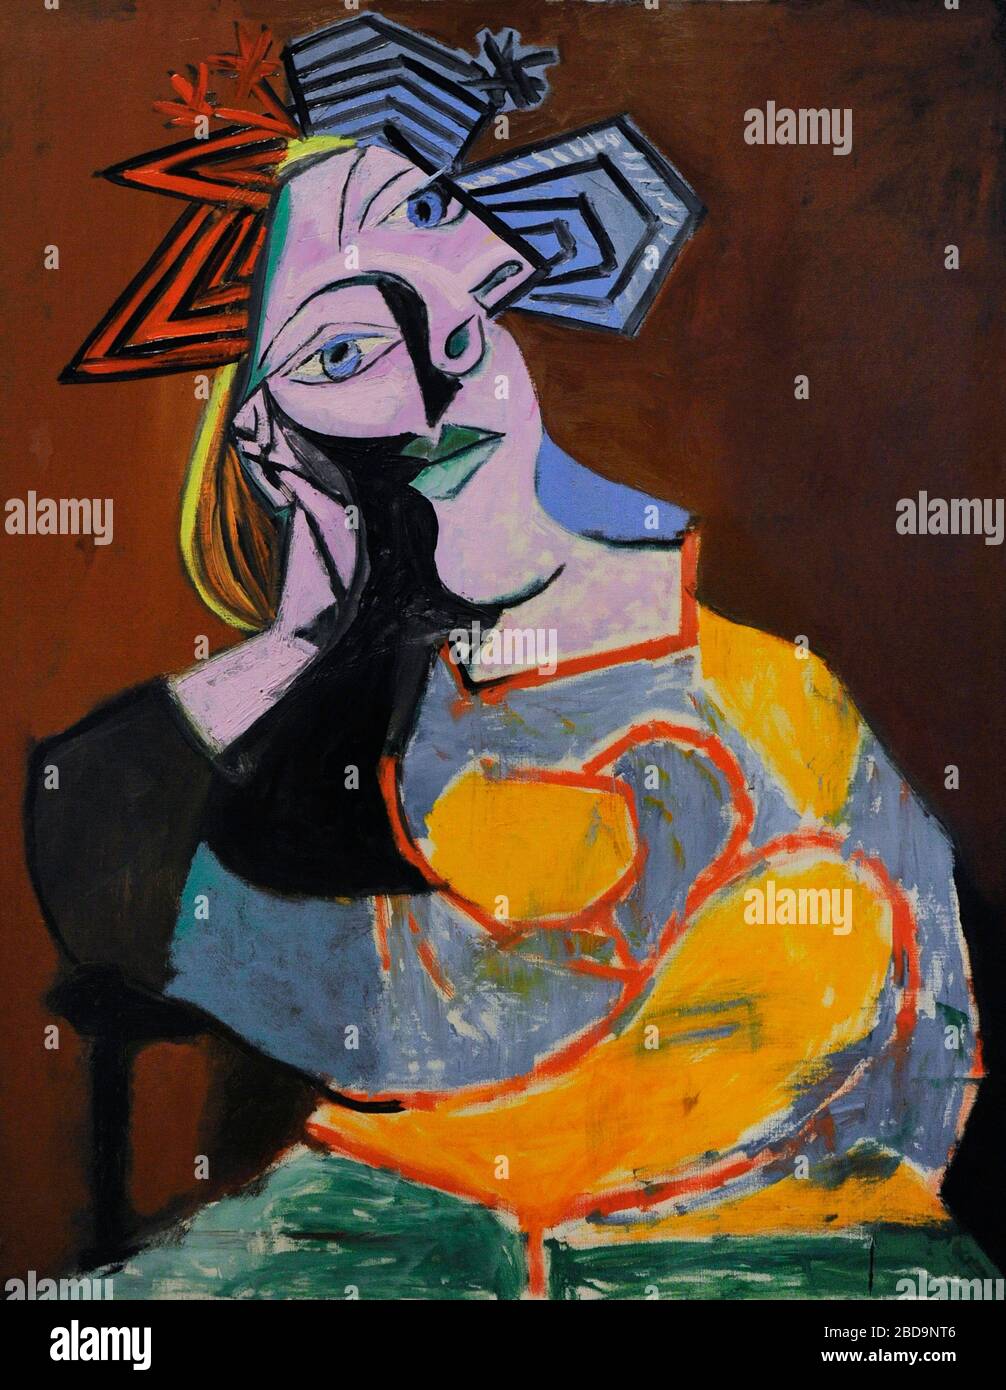 Pablo Ruiz Picasso (1881-1973). Pintor español. Mujer sentada acodada, 1939. Óleo sobre lienzo. Museo Nacional Centro de Arte Reina Sofía. Madrid. España. Banque D'Images